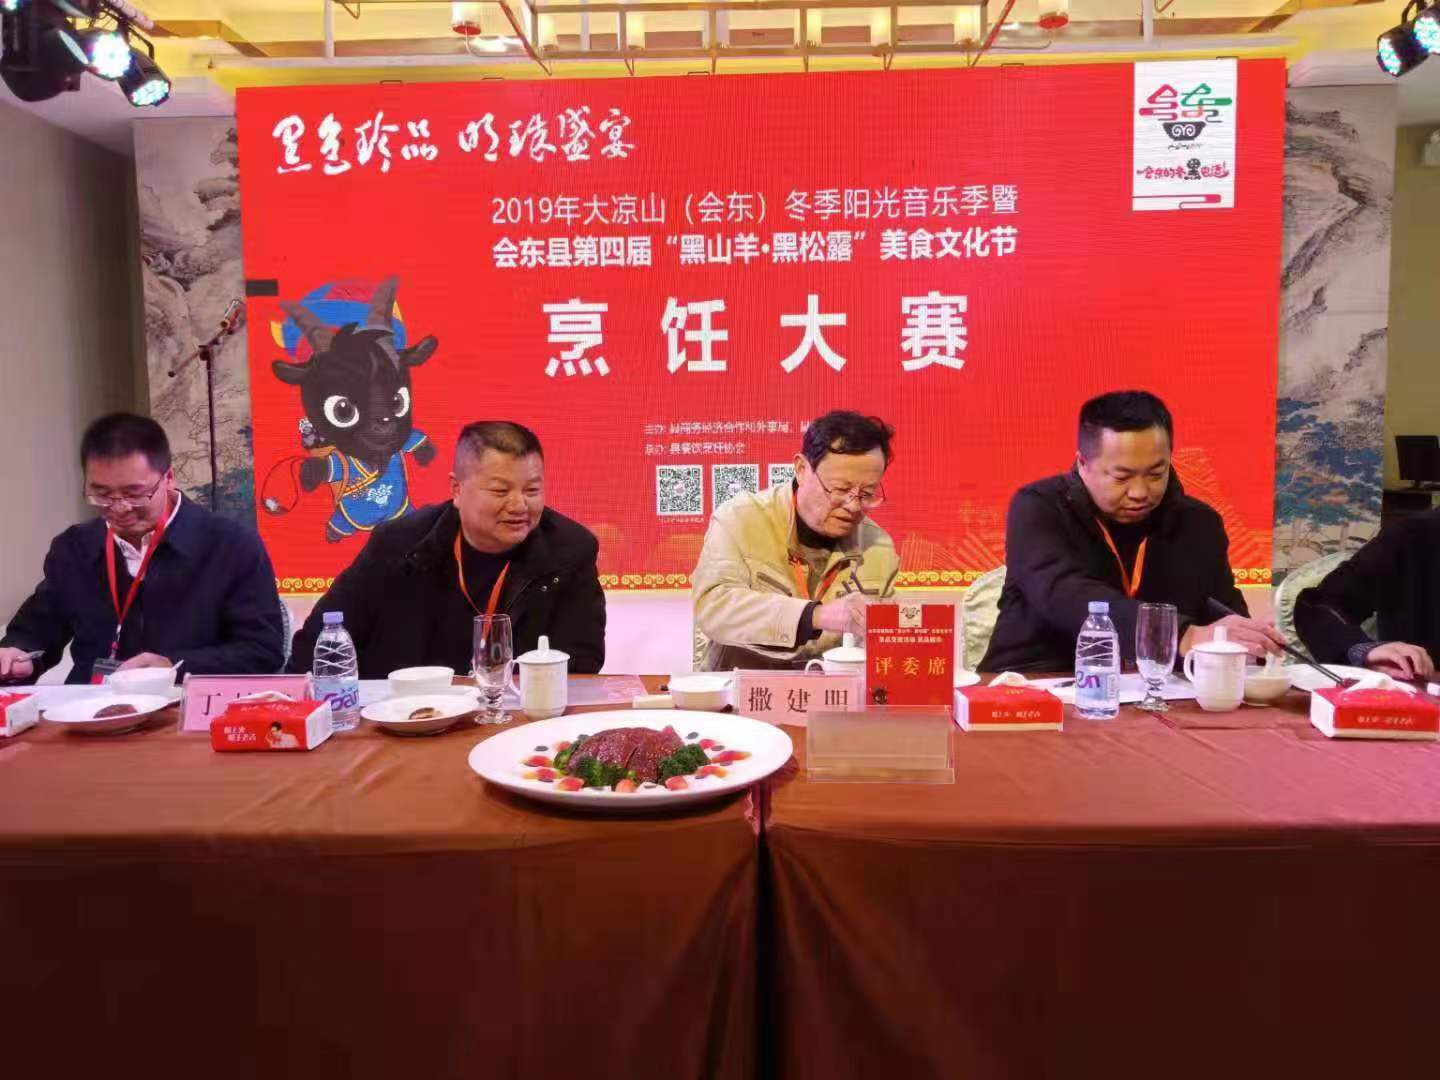 吉林伊通举办“伊鹿高鸽”烧烤美食文化节